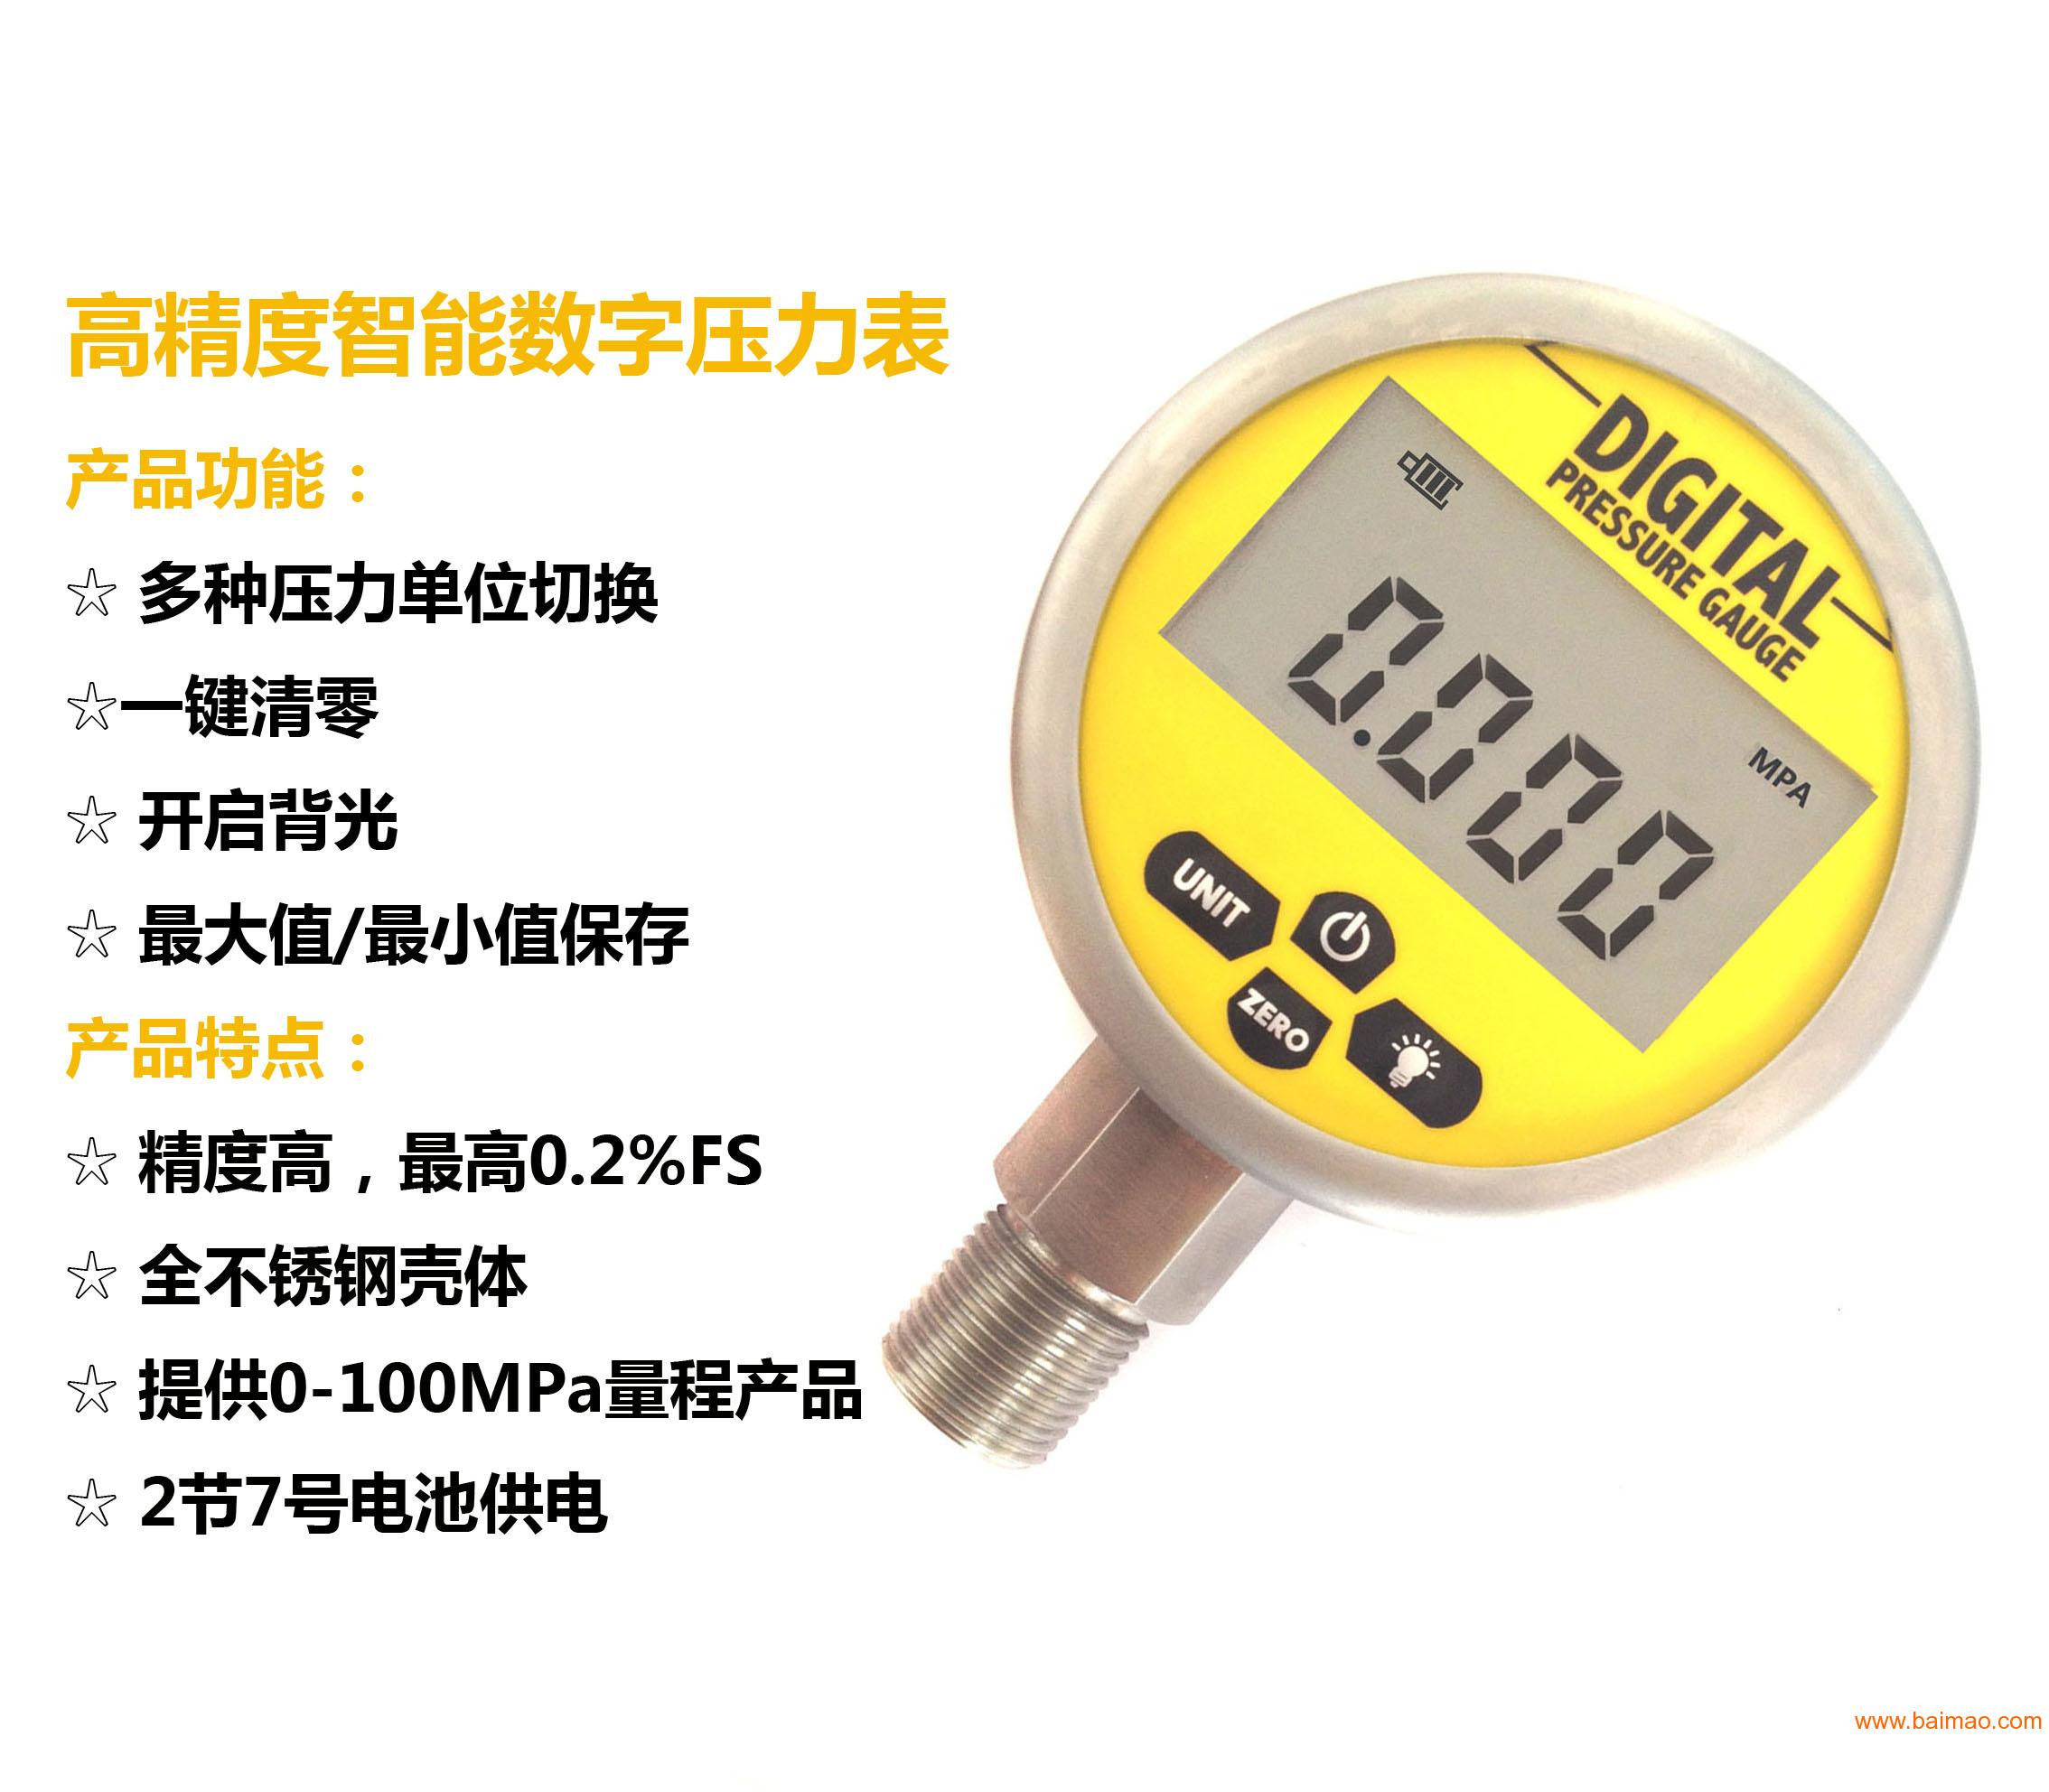 上海铭控MD-S280精密数字压力表 电池压力表